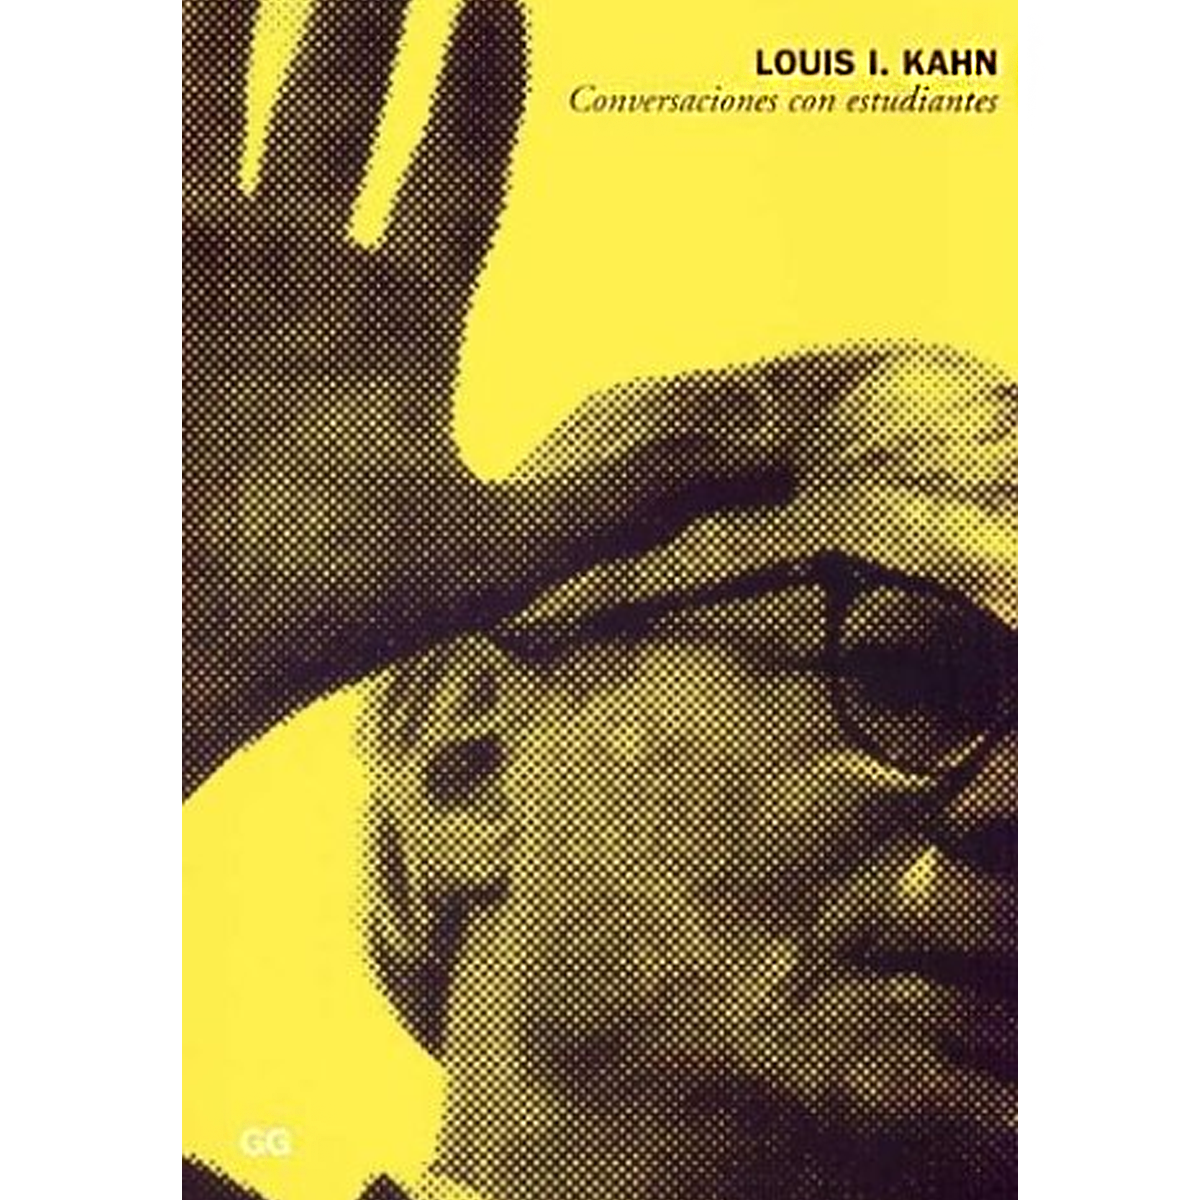 Louis I. Kahn: conversaciones con estudiantes